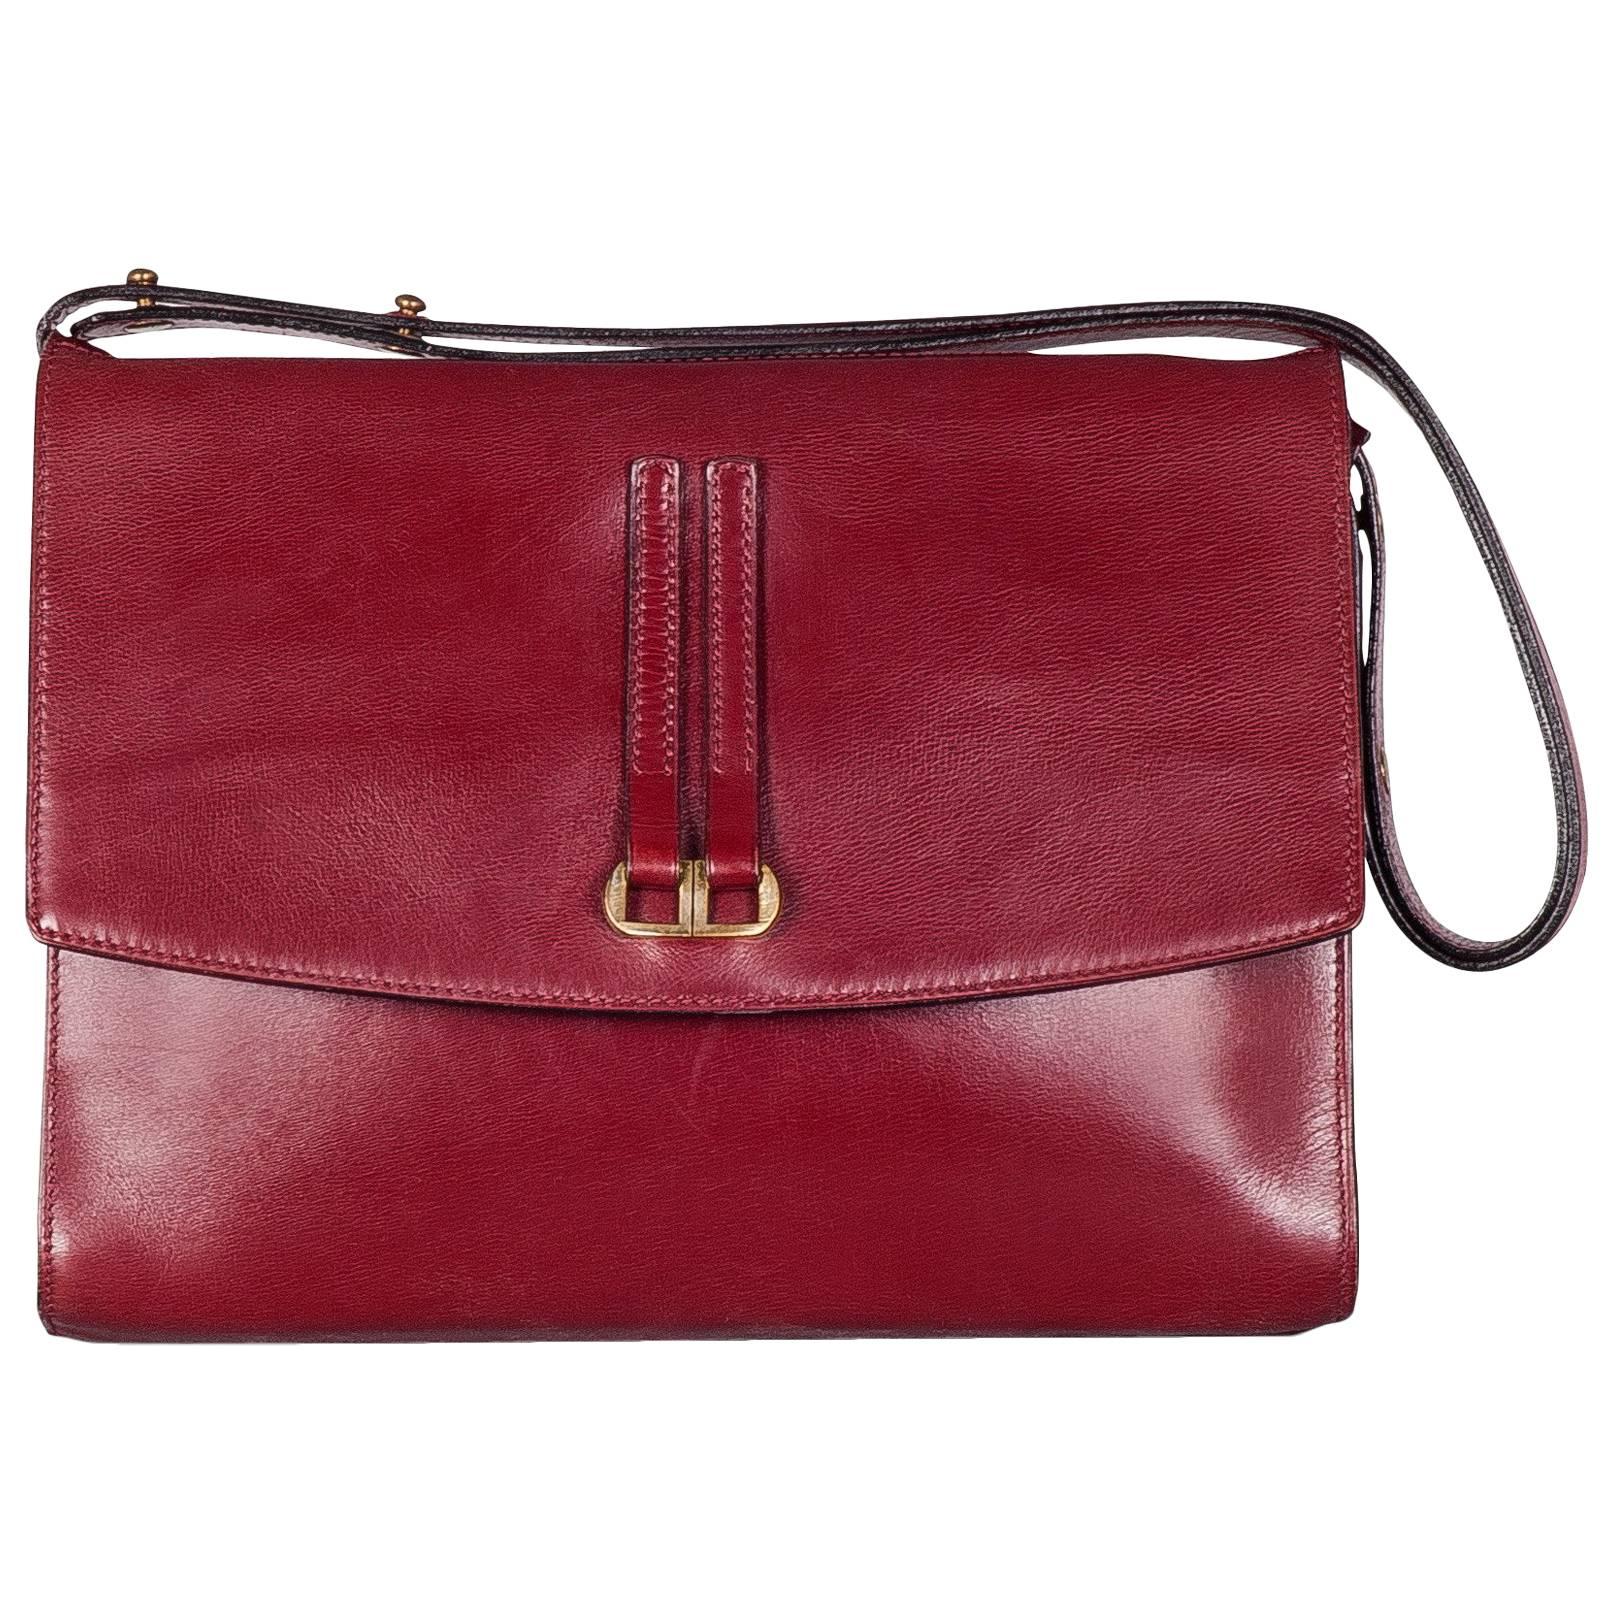 Delvaux No. 26 "Grenat" Handbag in Box Calf Leather, 1979 For Sale